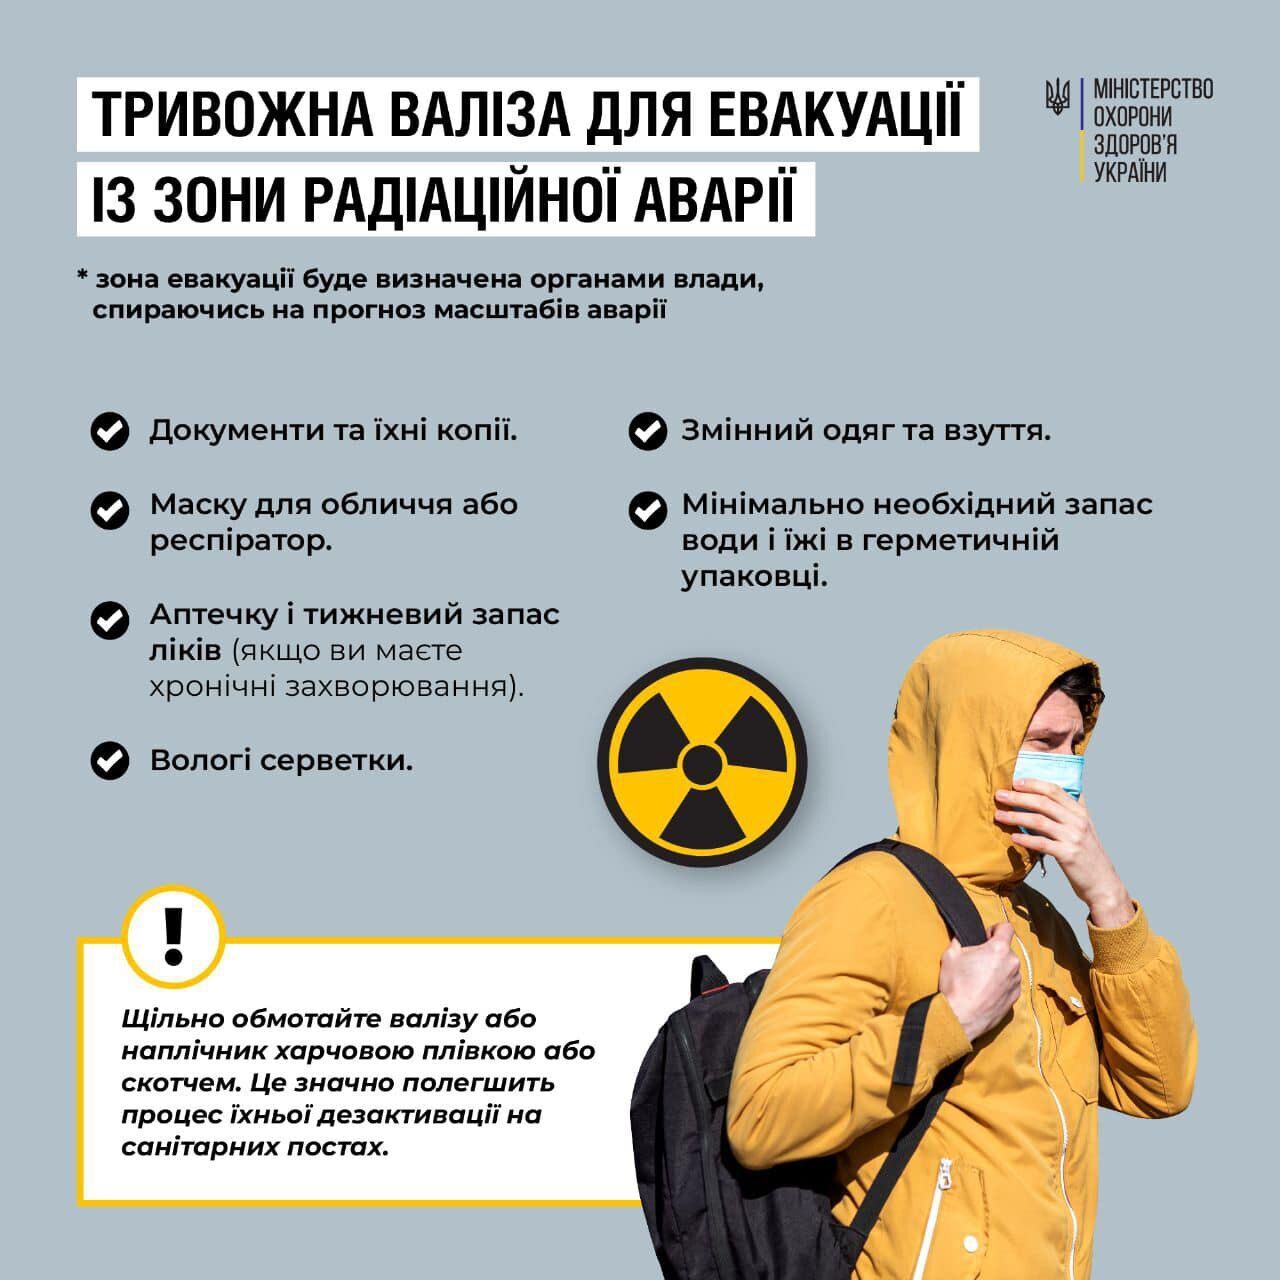 В Минздраве выпустили рекомендации по сбору тревожного чемодана и порядку действий при теракте на ЗАЭС. Инфографика